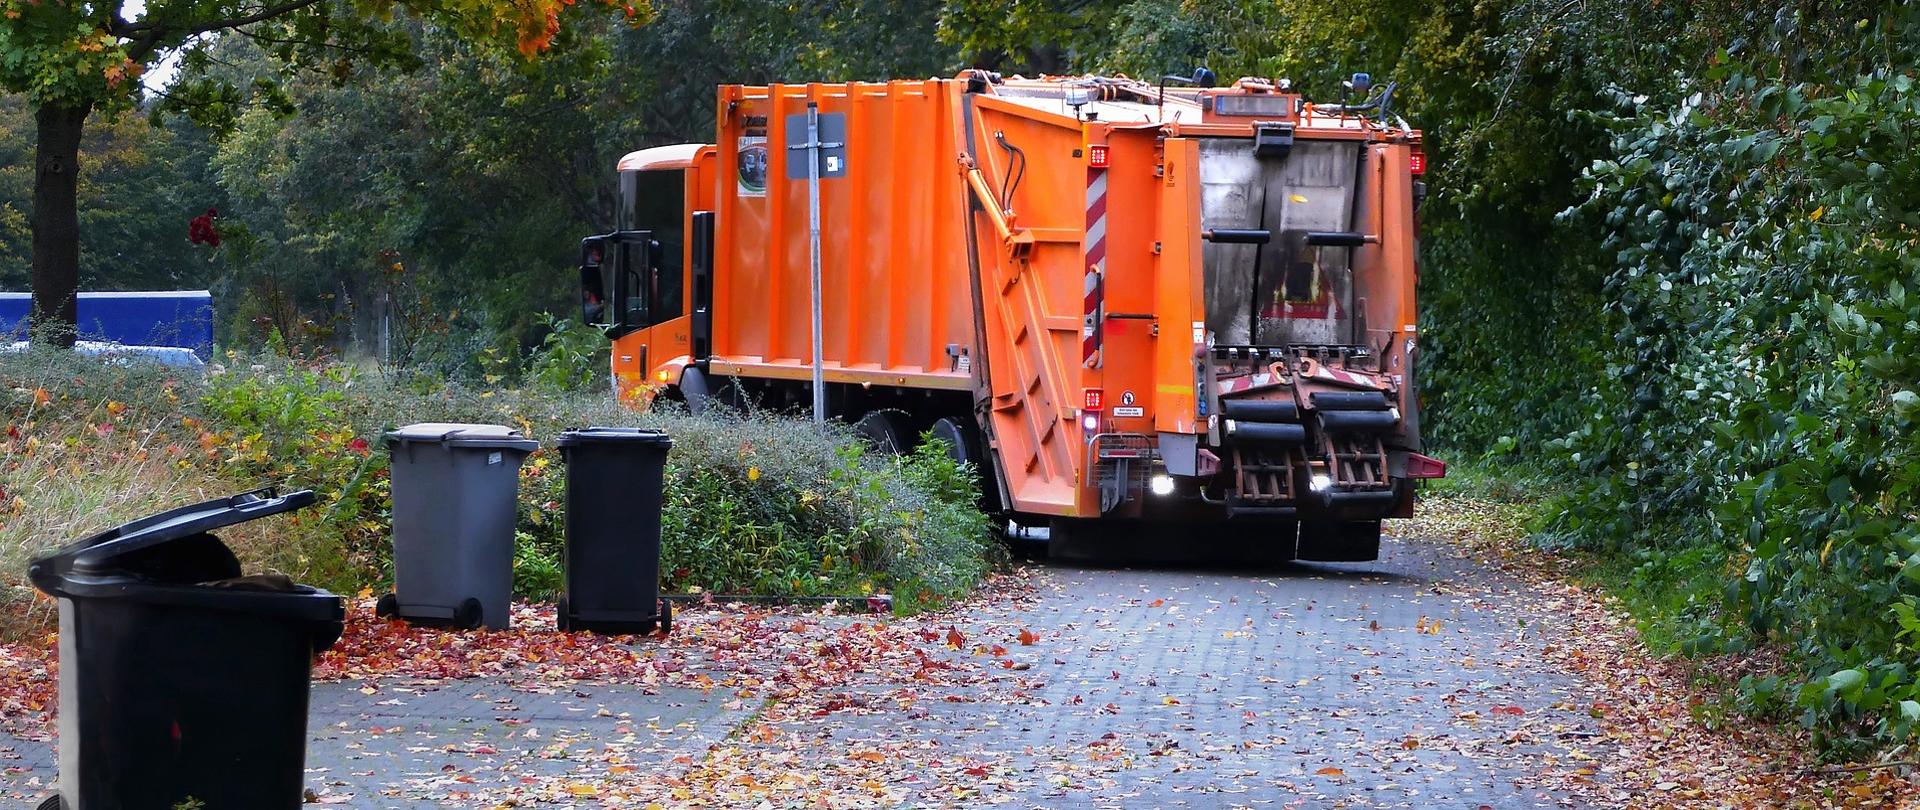 Pomarańczowa śmieciarka odbiera śmieci z osiedla 